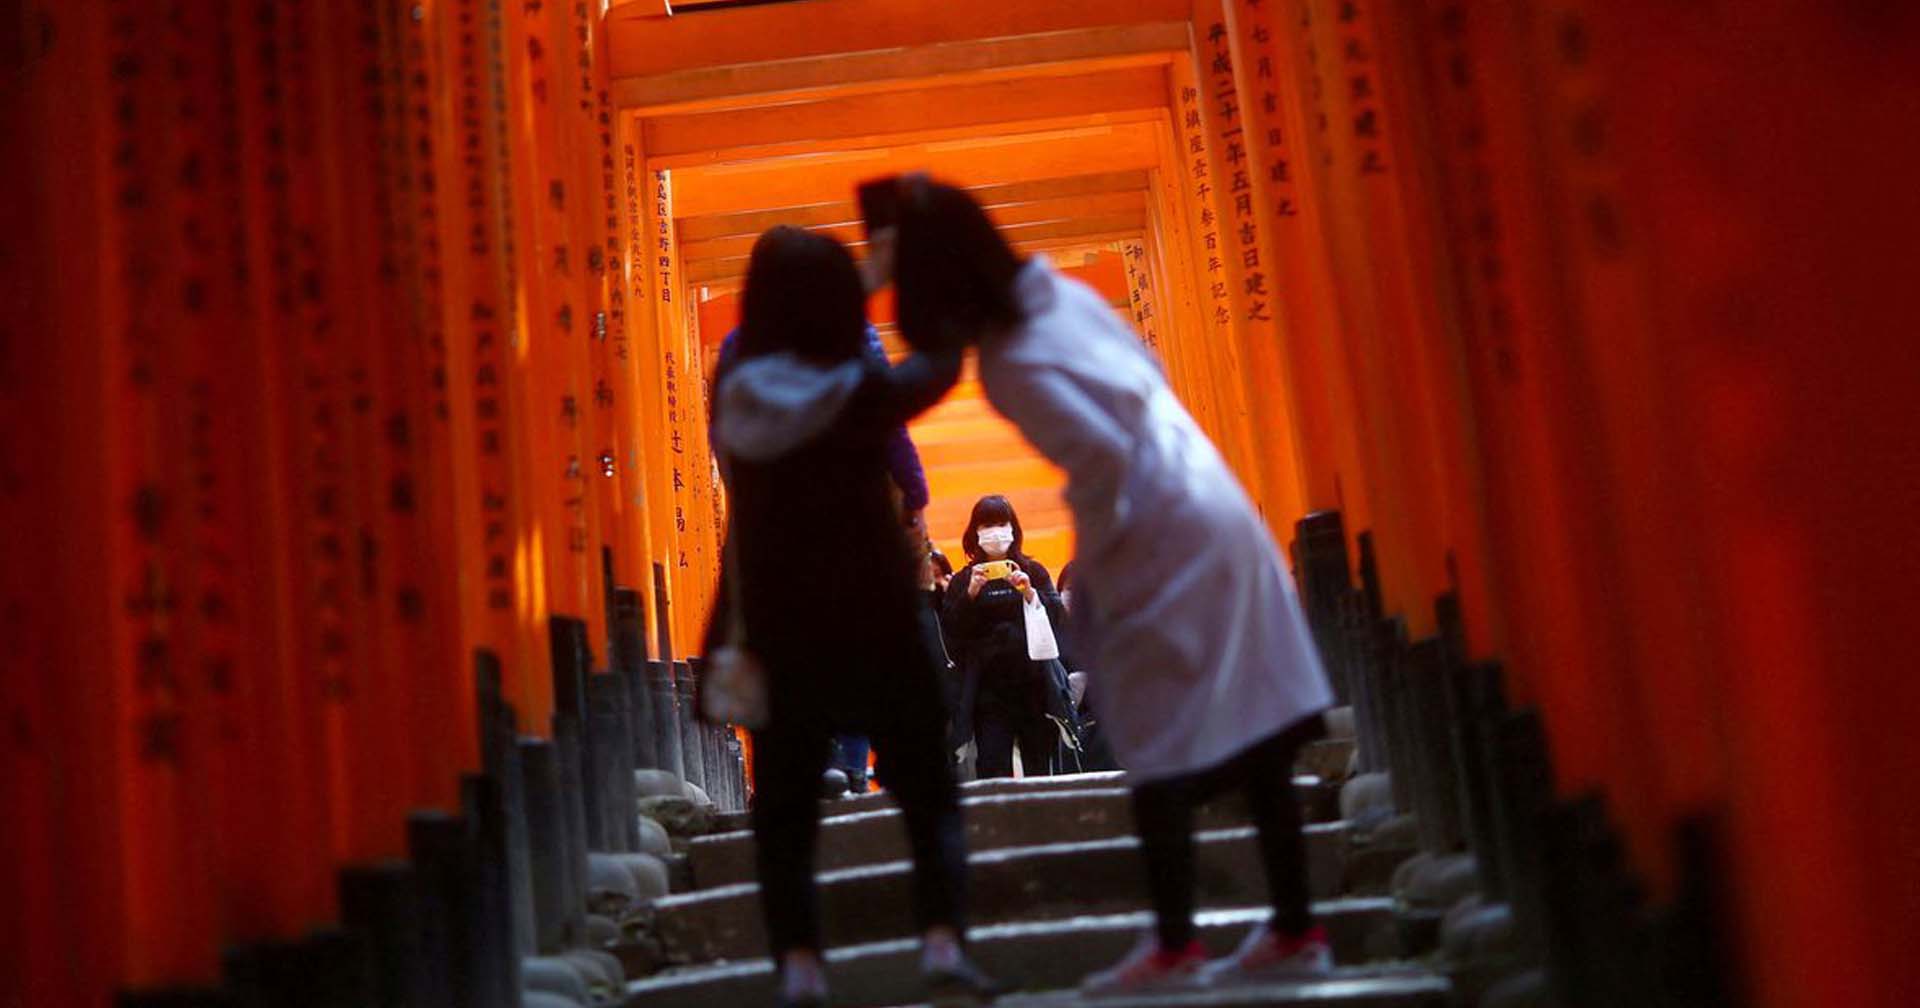 10 มิ.ย. นี้ ญี่ปุ่นเปิดรับทัวร์นักท่องเที่ยว แนะสวมหน้ากากอนามัย-ทำประกันโควิด